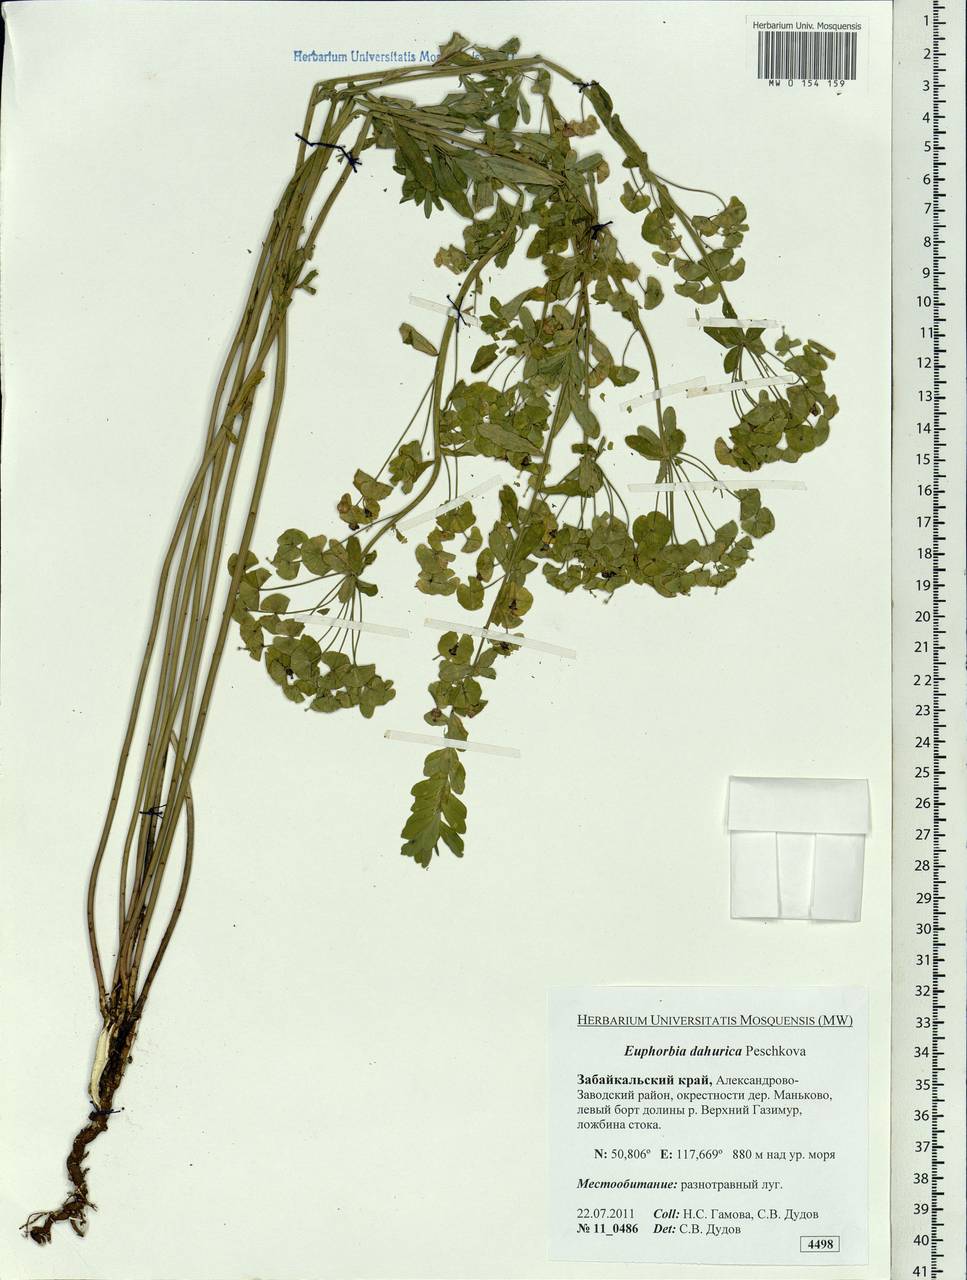 Euphorbia dahurica Peschkova, Siberia, Baikal & Transbaikal region (S4) (Russia)